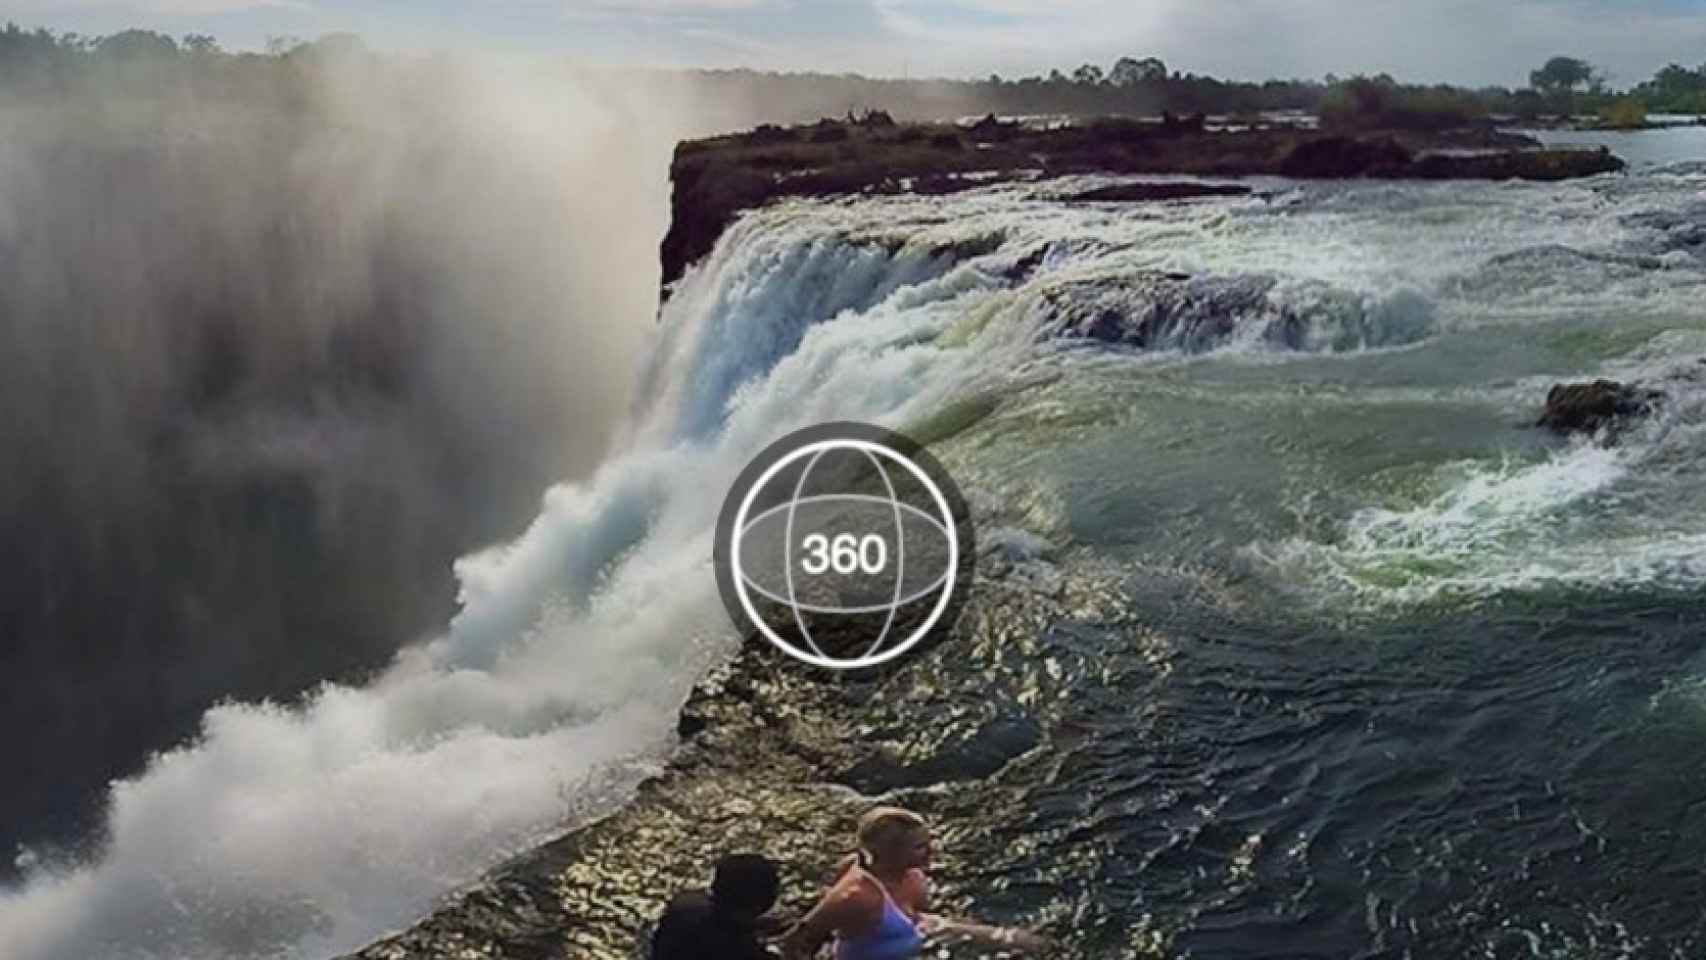 La función permitía crear fotos en 360 grados